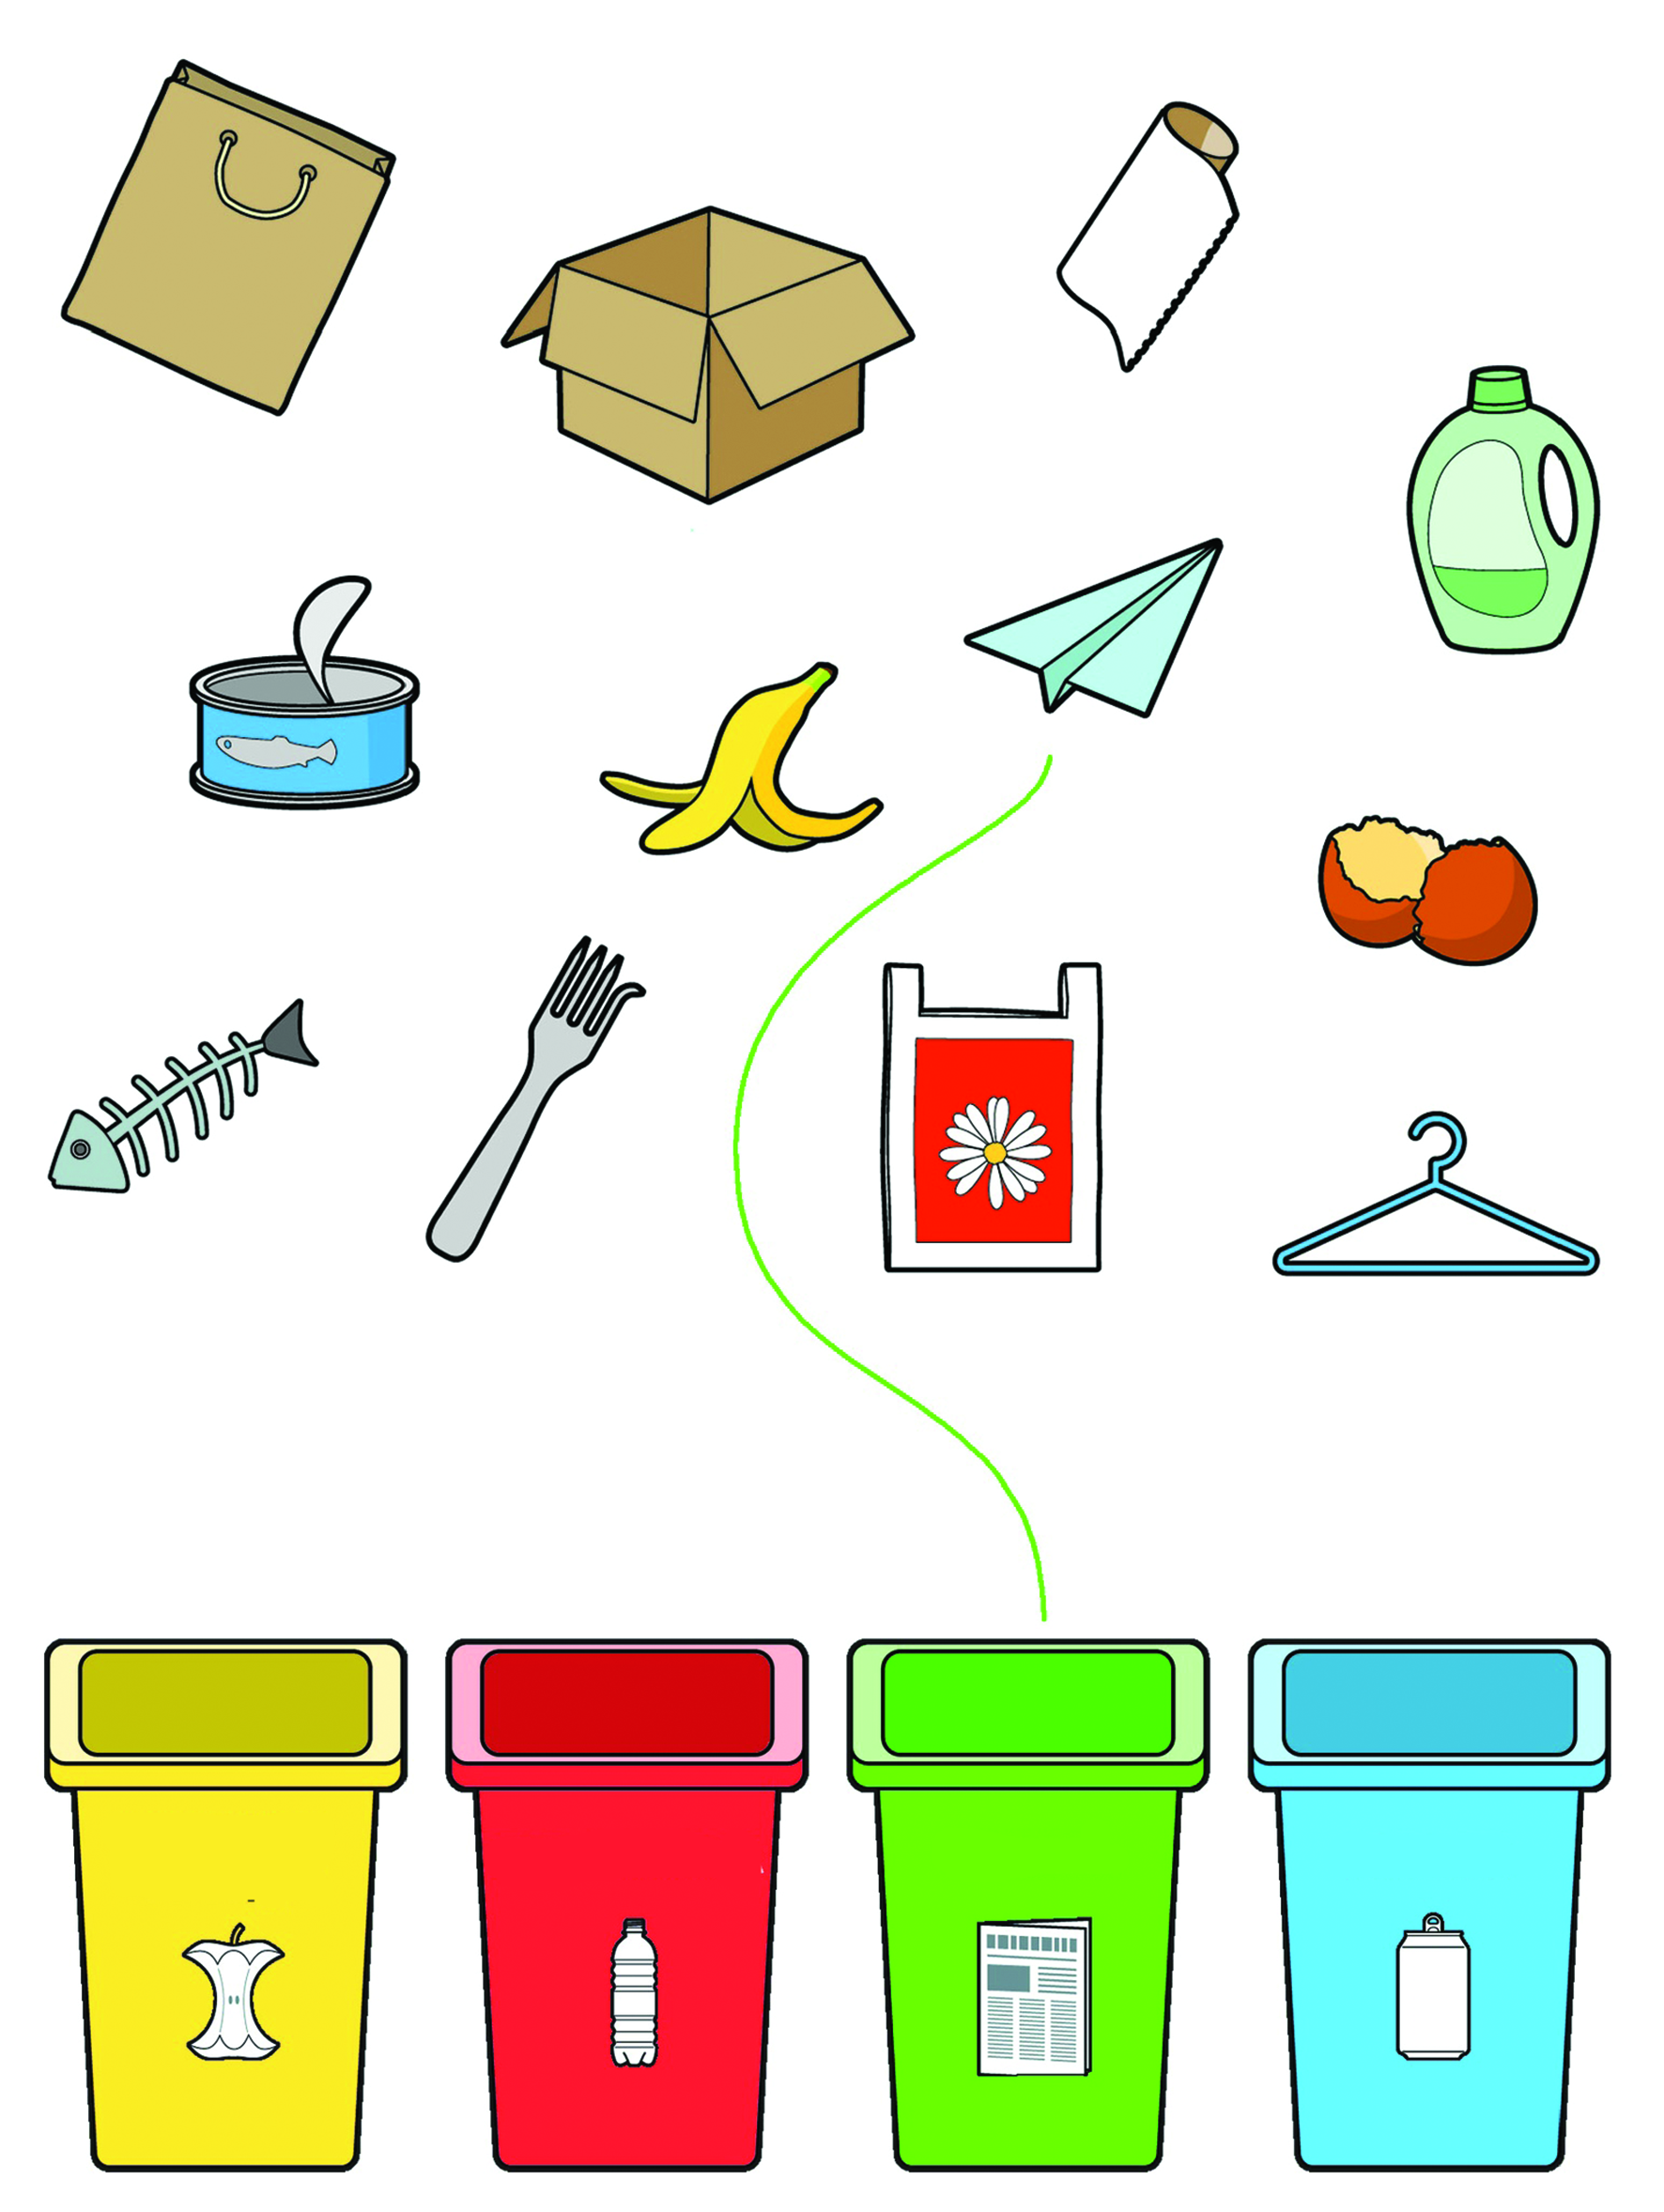 Собери мусорку. Игра для детей сортировка отходов.